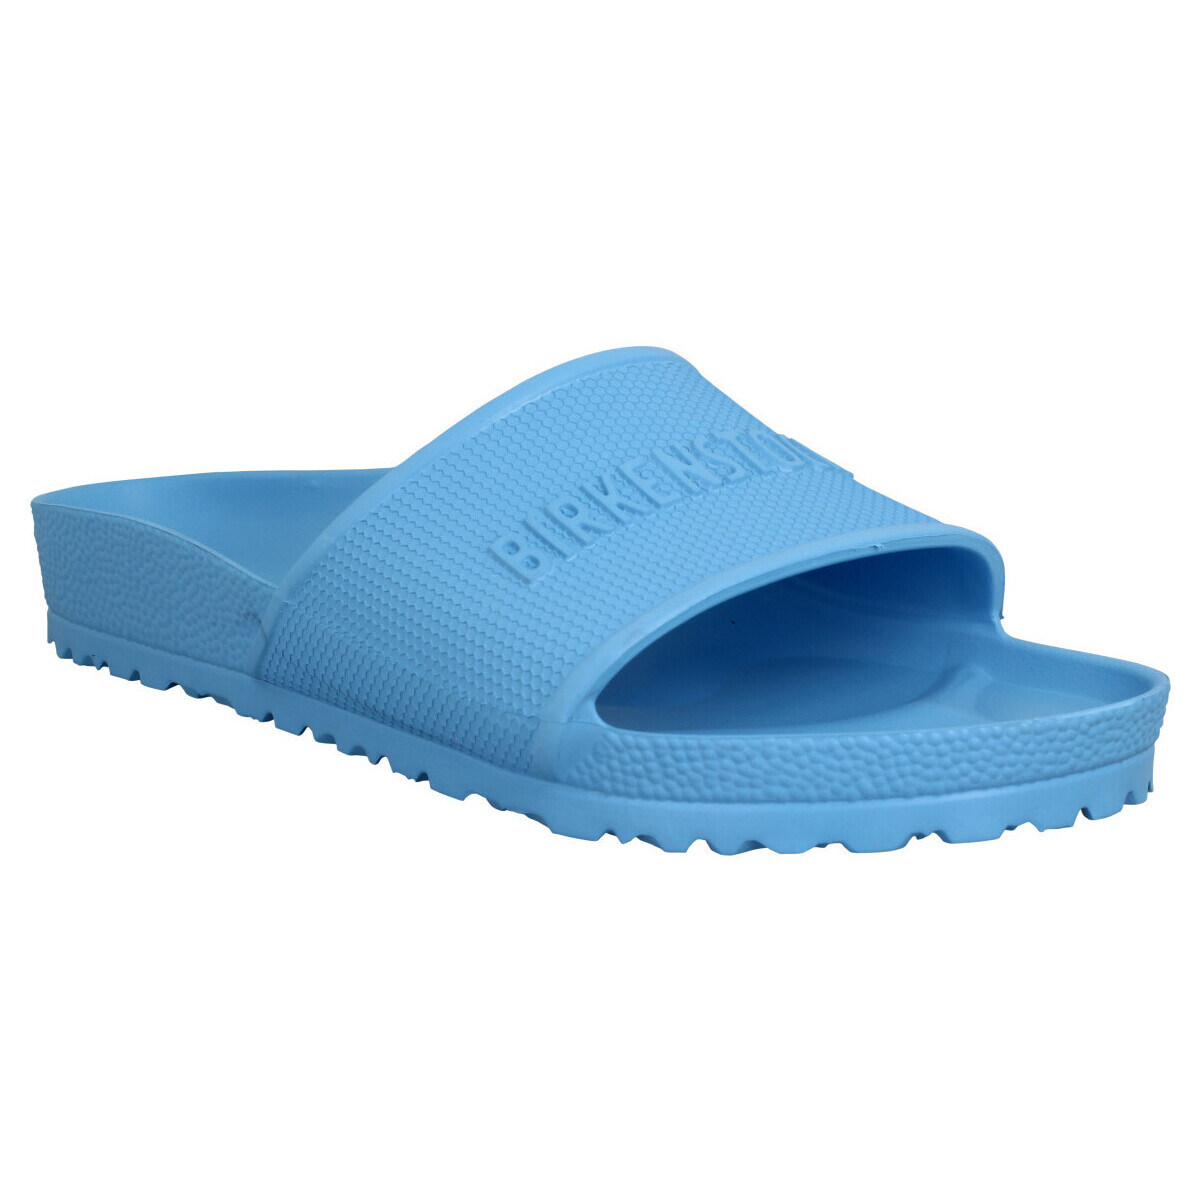 Chaussures Homme Sandales et Nu-pieds Birkenstock Barbados Eva Homme Sky Blue Bleu